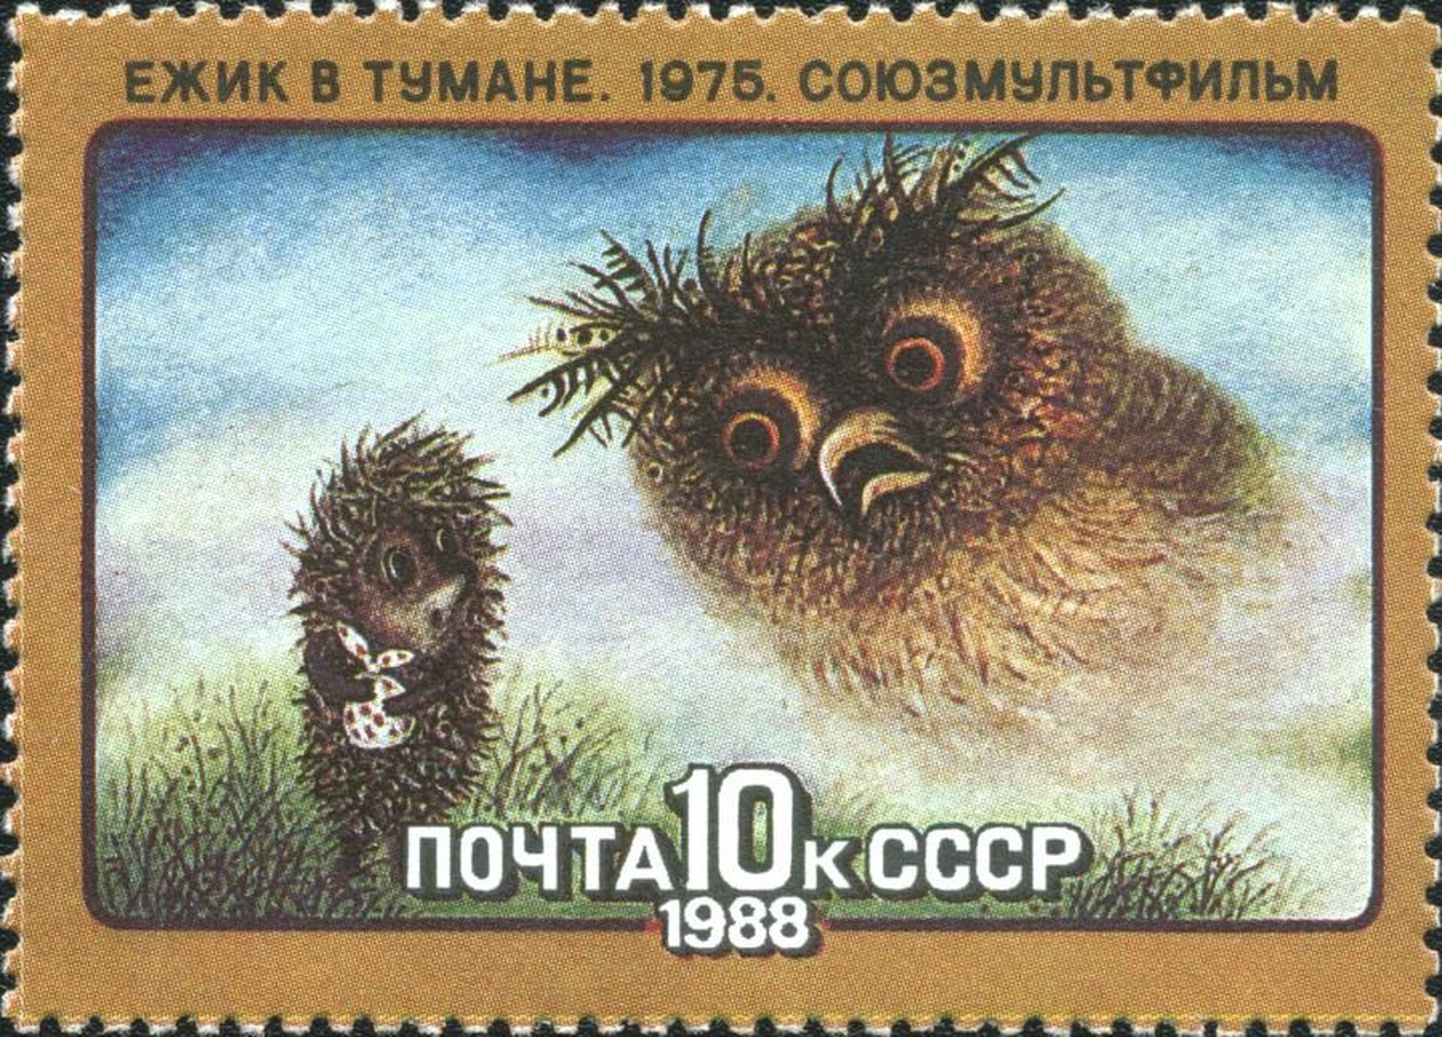 Nõukogude Liidus välja antud postmark muinasjuttmultifilmi «Siil udus» ainetel.